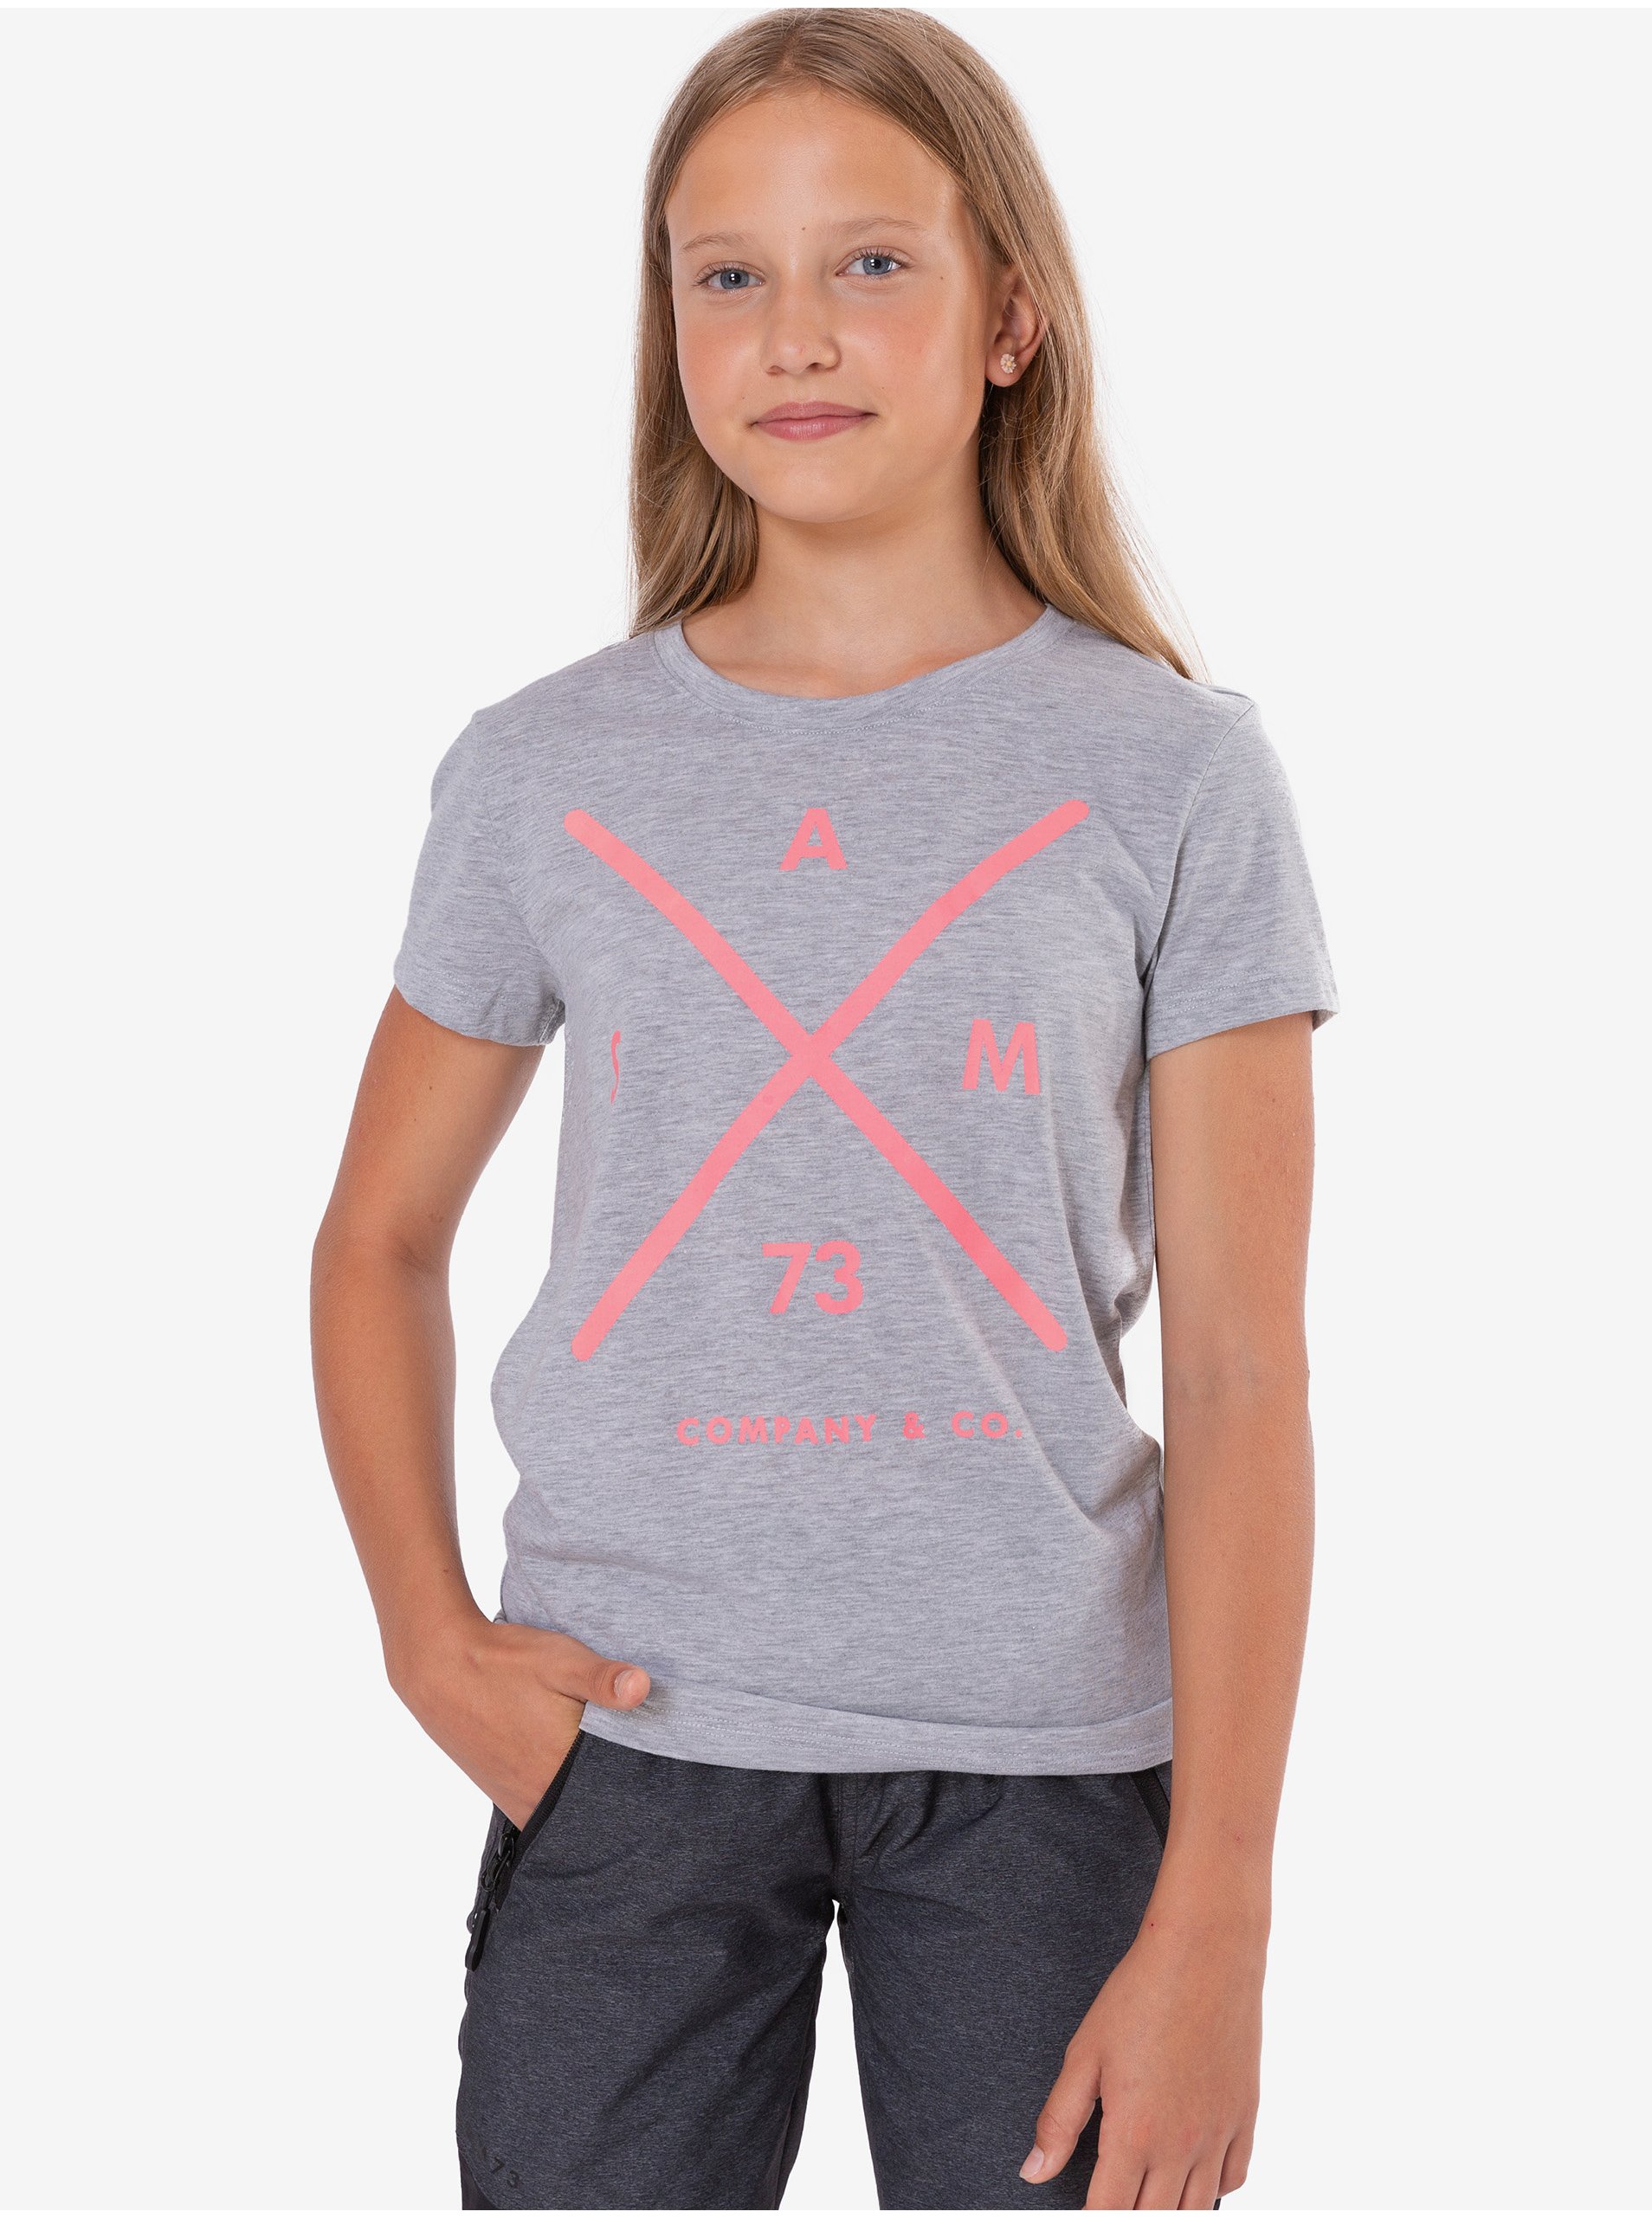 Lacno Svetlošedé dievčenské tričko s potlačou SAM 73